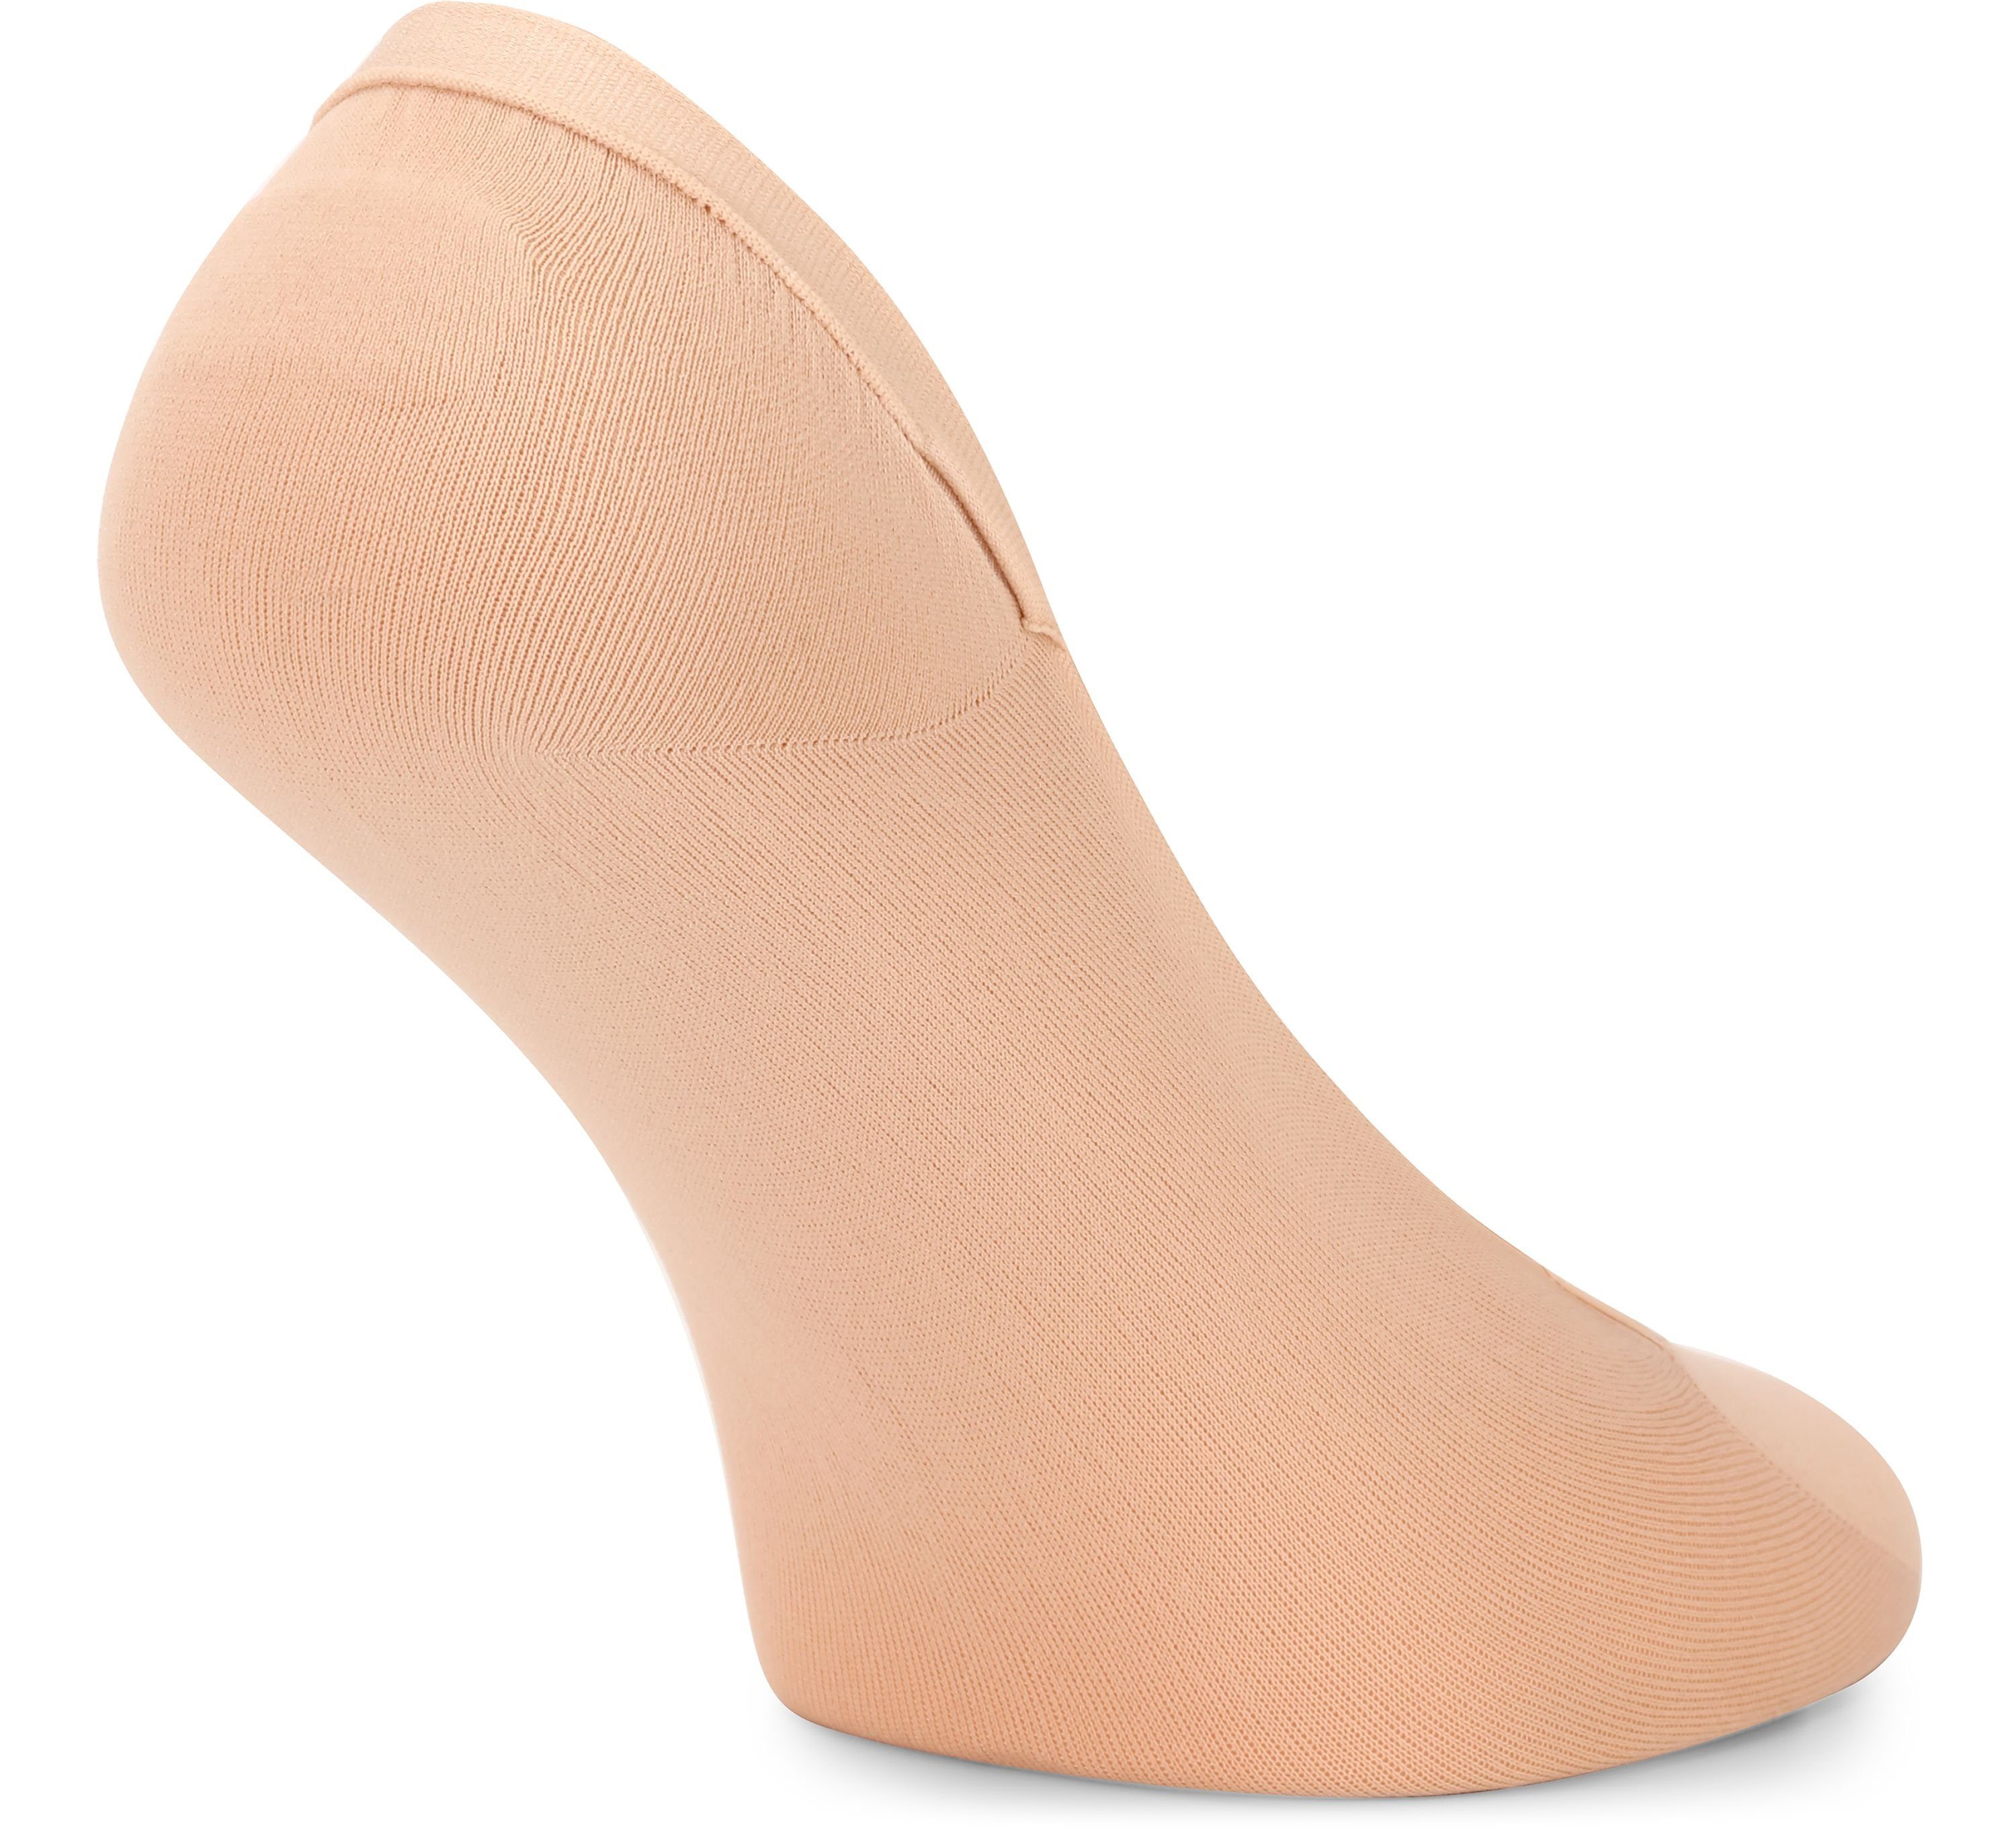 Merry Style Socken Damen Atmungsaktive Füßlinge 6Pack Halbsocken - Sneaker MSGI046 Socken Beige